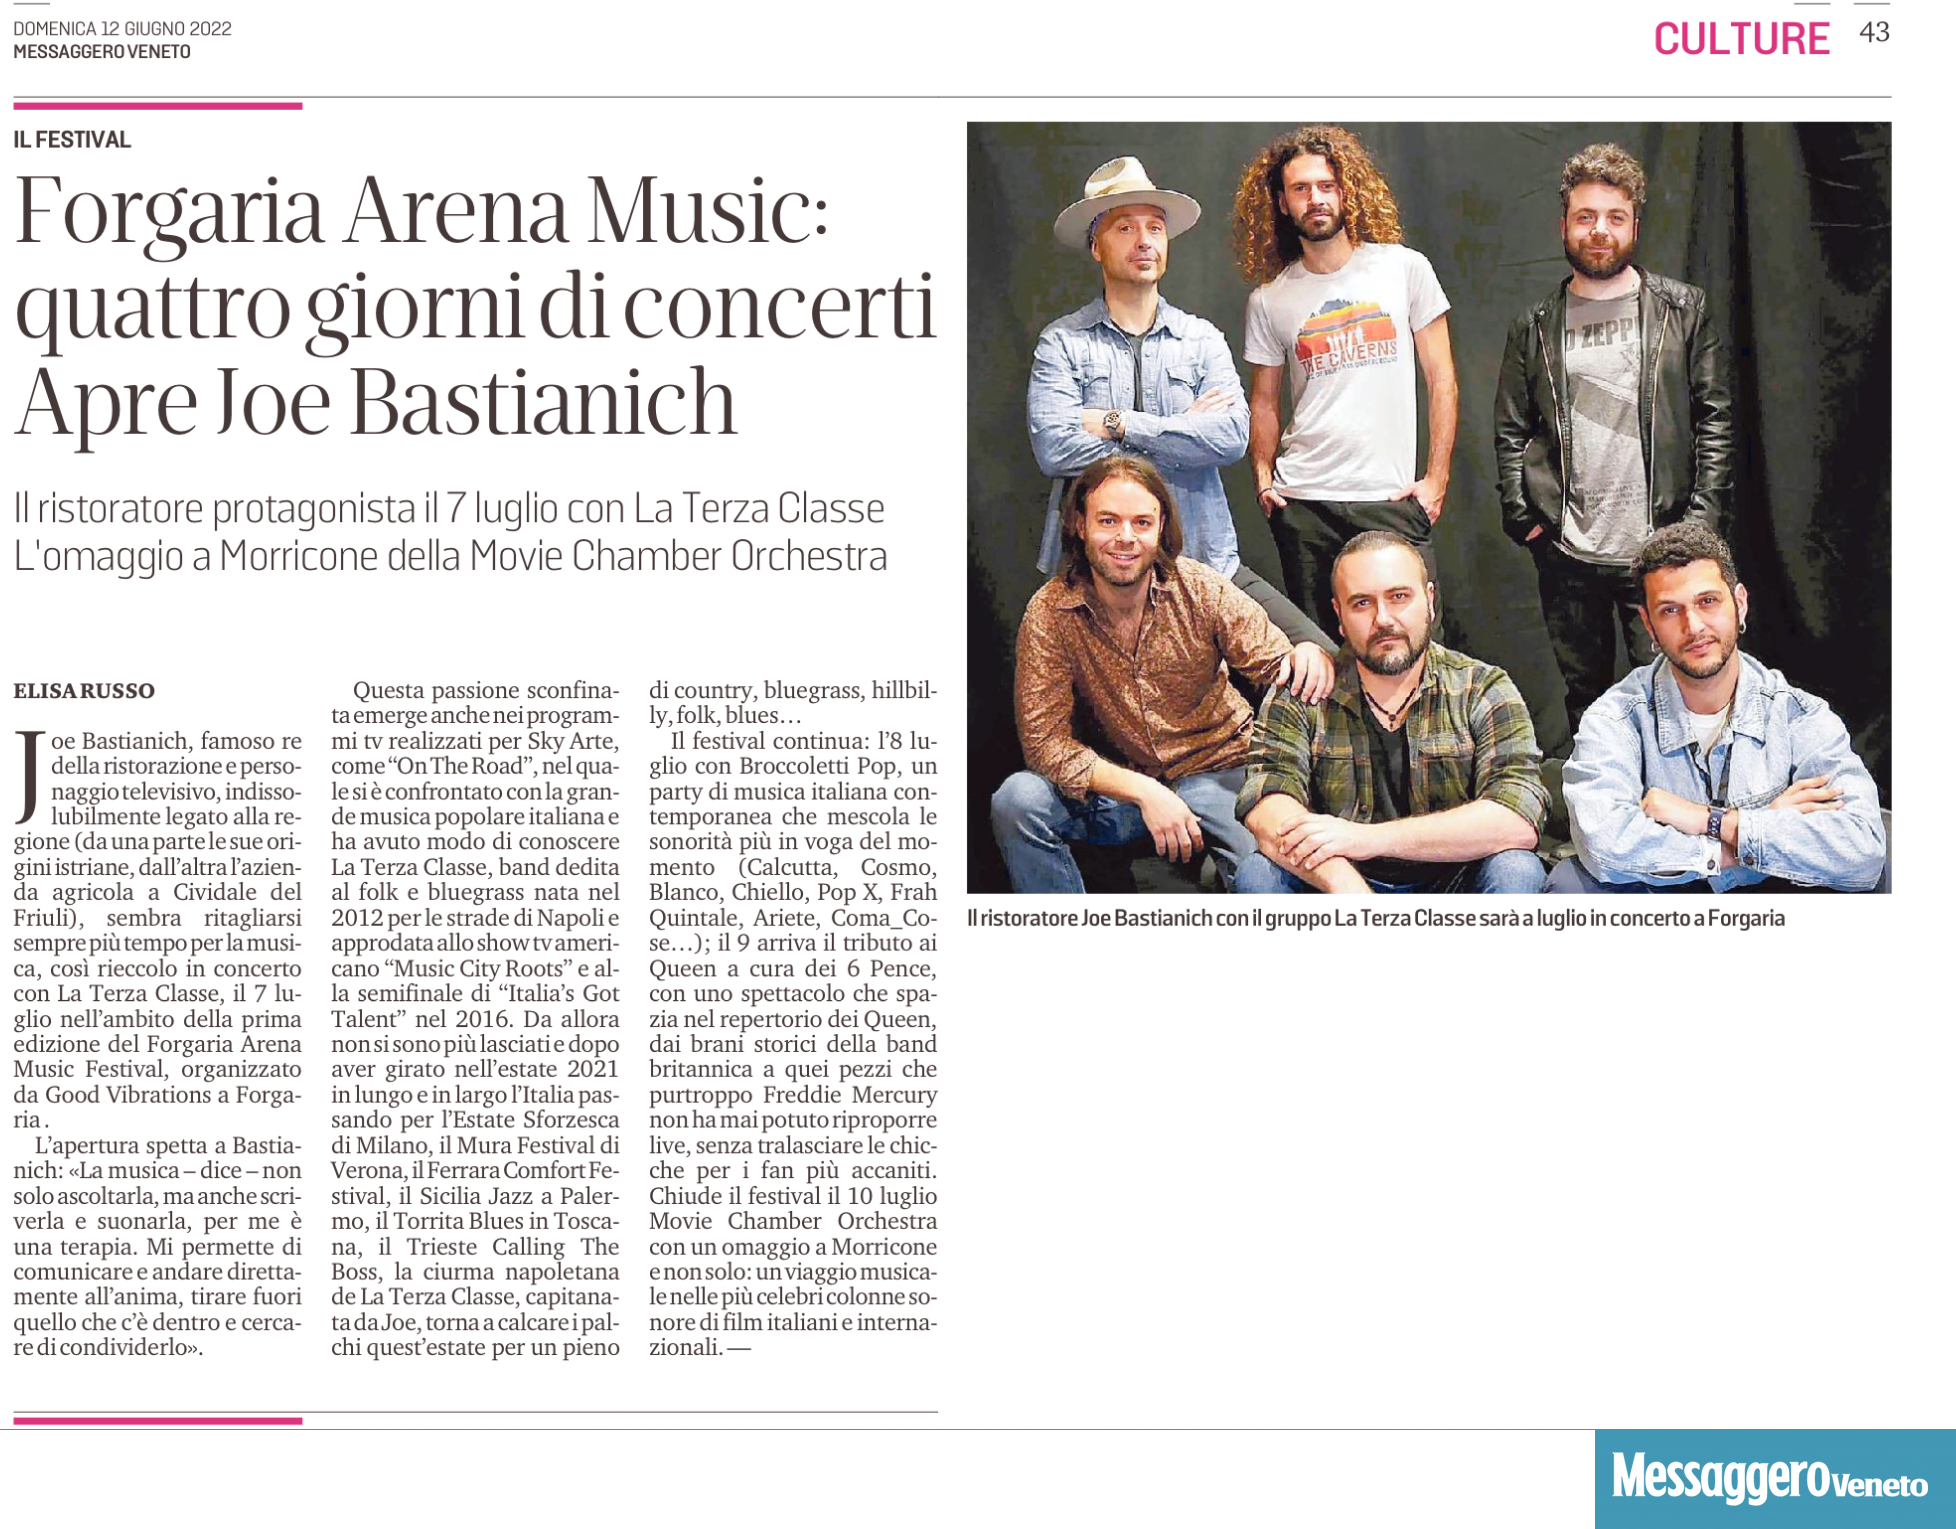 Articolo di presentazione di “Forgaria Arena Music Fest” sul Messaggero Veneto